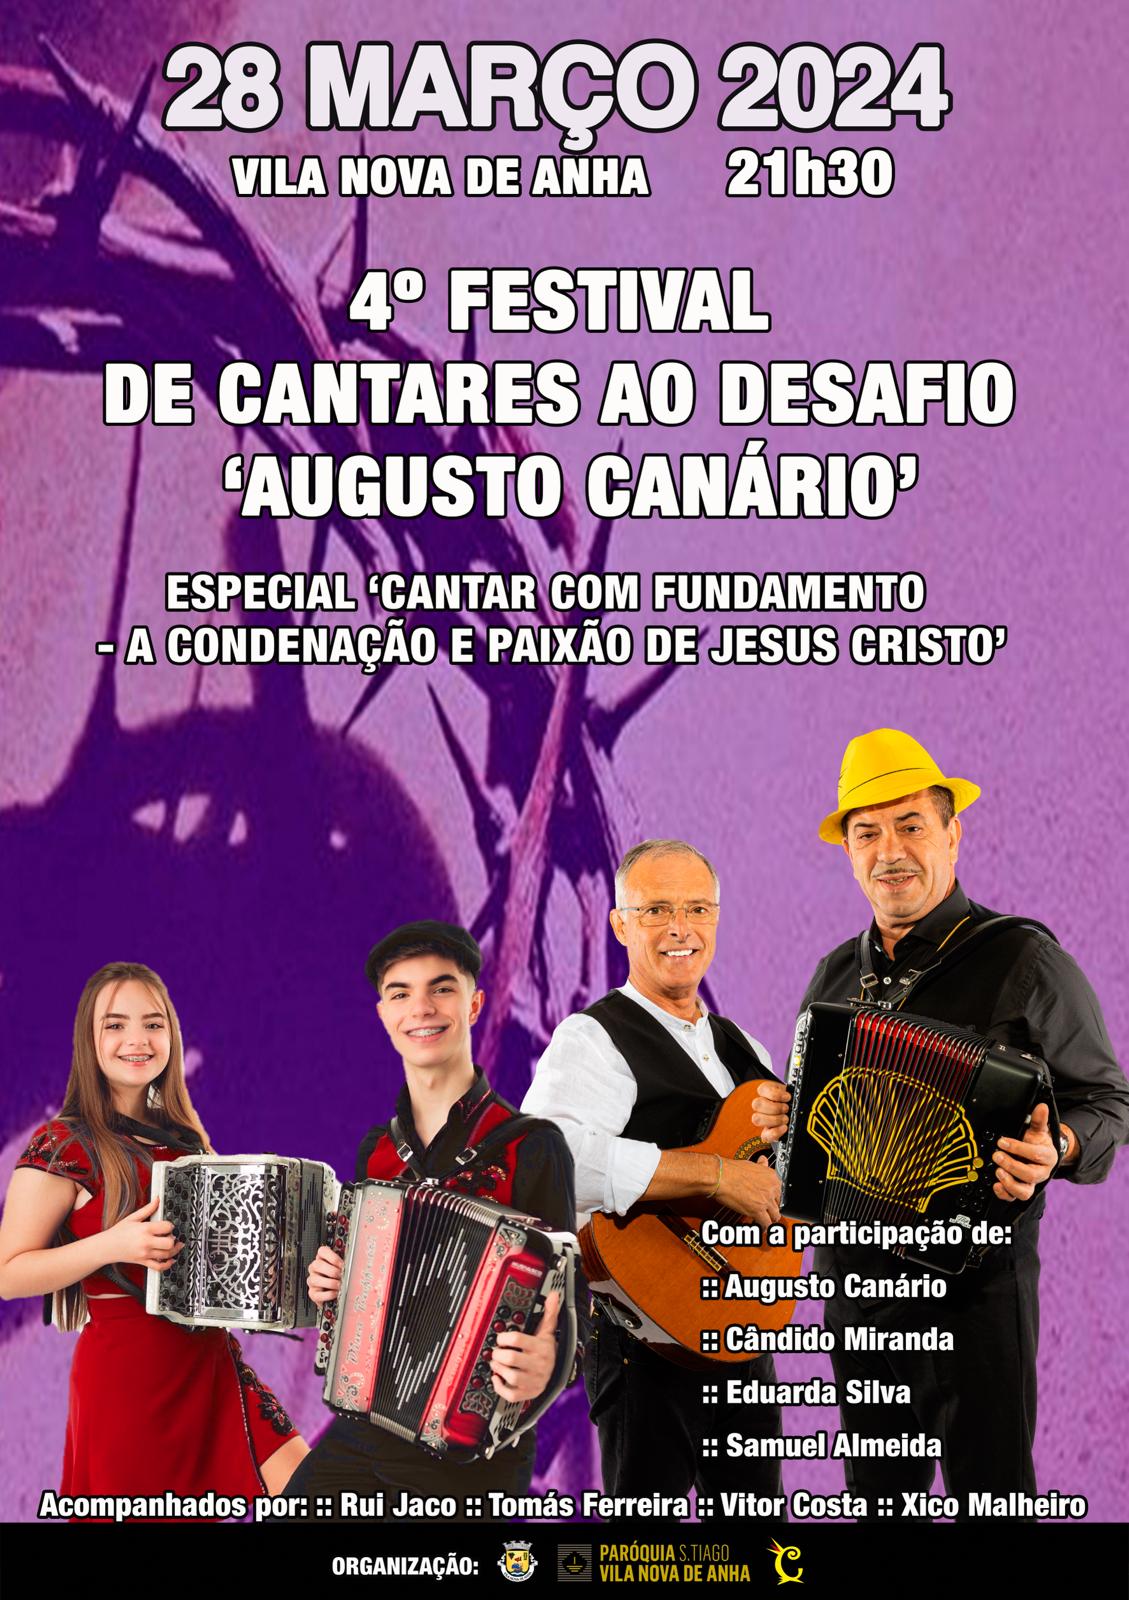 4º FESTIVAL DE CANTARES AO DESAFIO AUGUSTO CANÁRIO